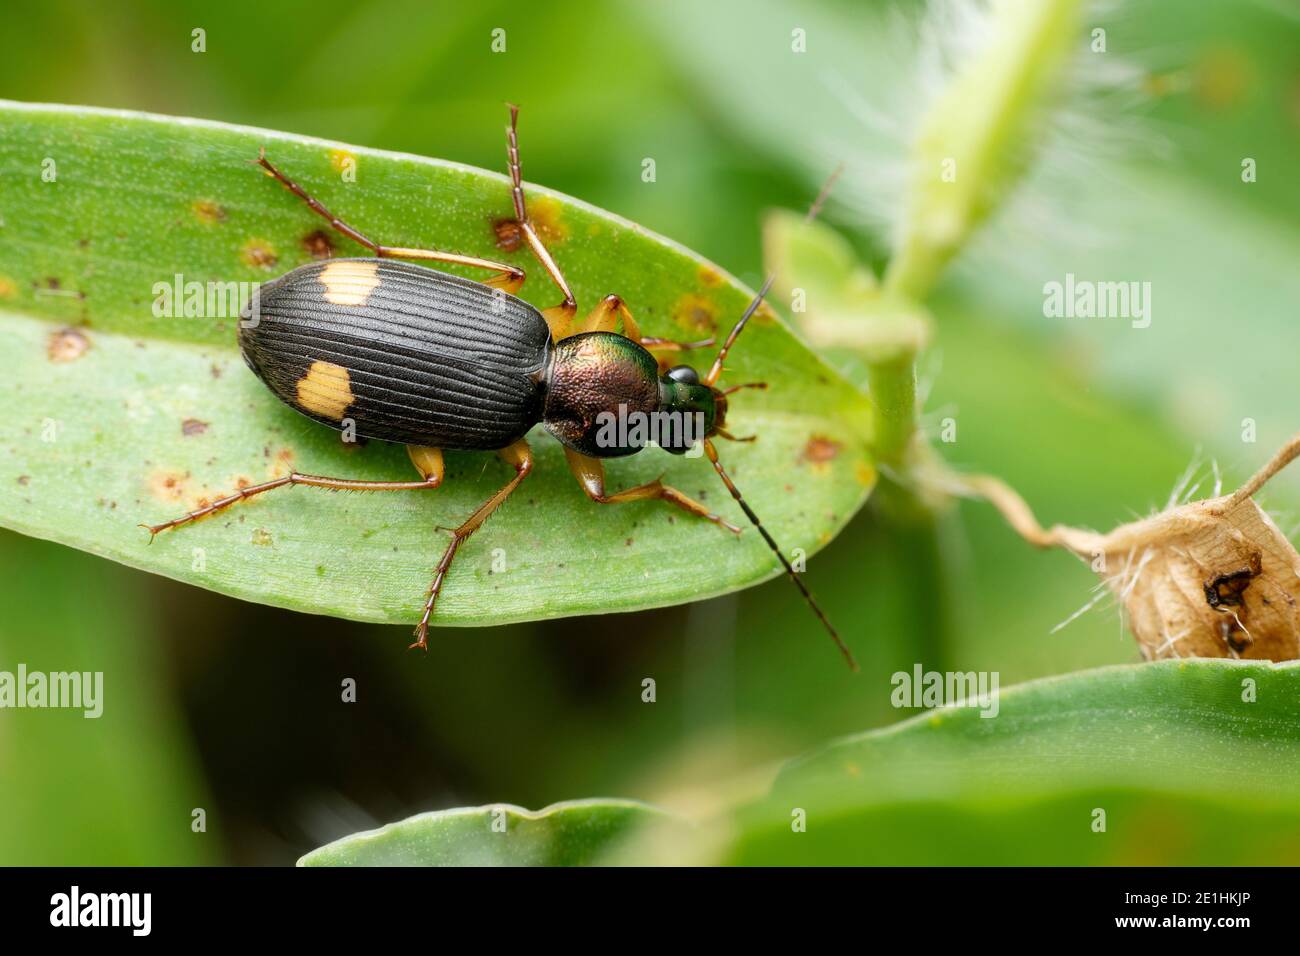 Dorsal of Ground beetle, Chlaenius boneili, Satara, Maharashtra, India Stock Photo